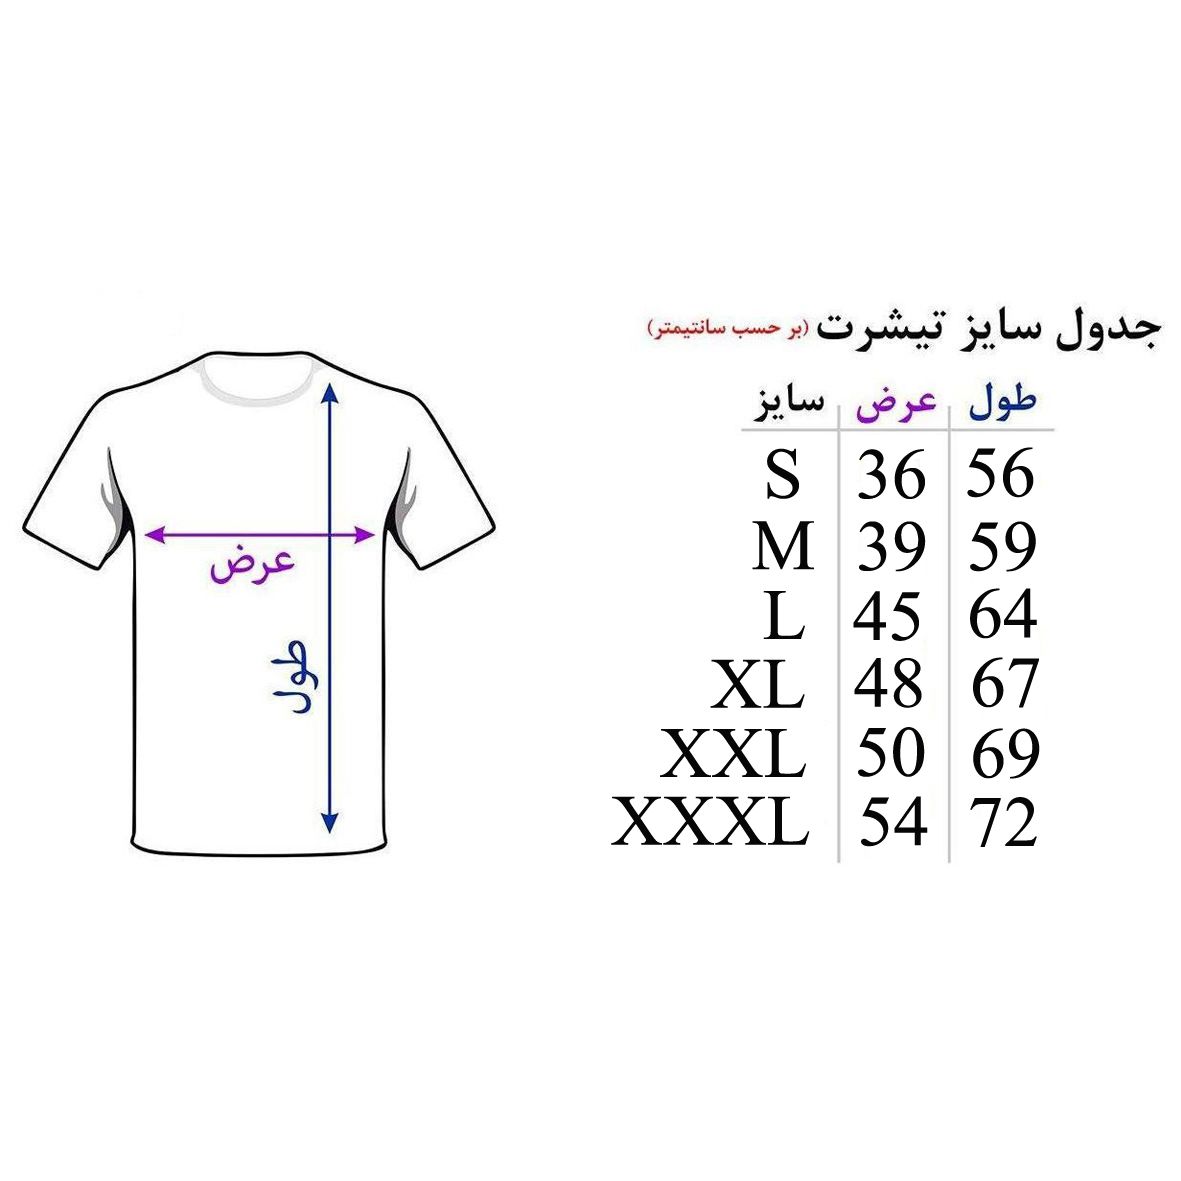 تی شرت آستین کوتاه زنانه اسد طرح وان دایرکشن کد 130 -  - 4